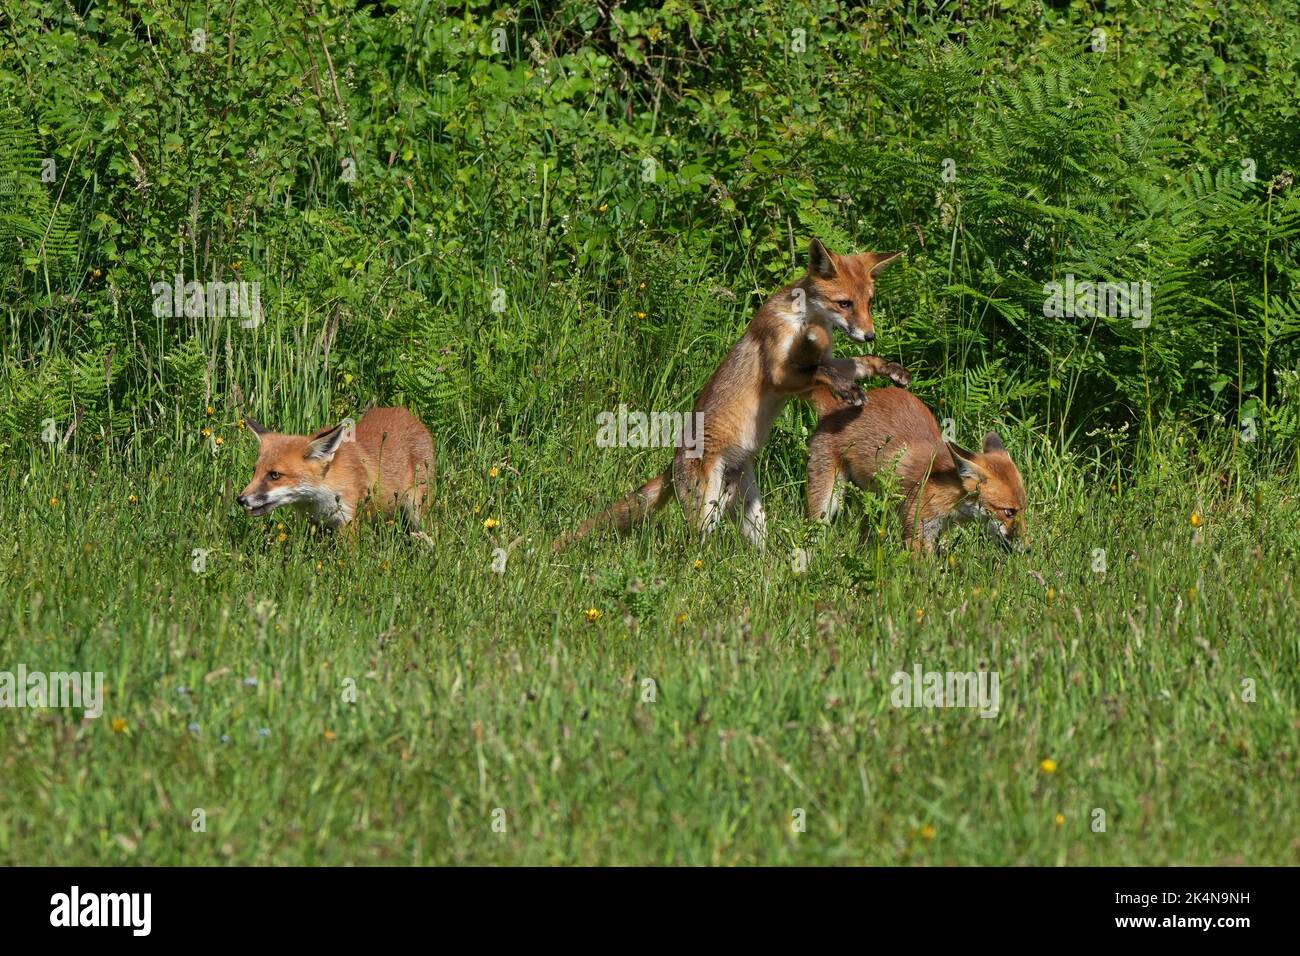 Fox cubs-Vulpes vulpes at play. Stock Photo